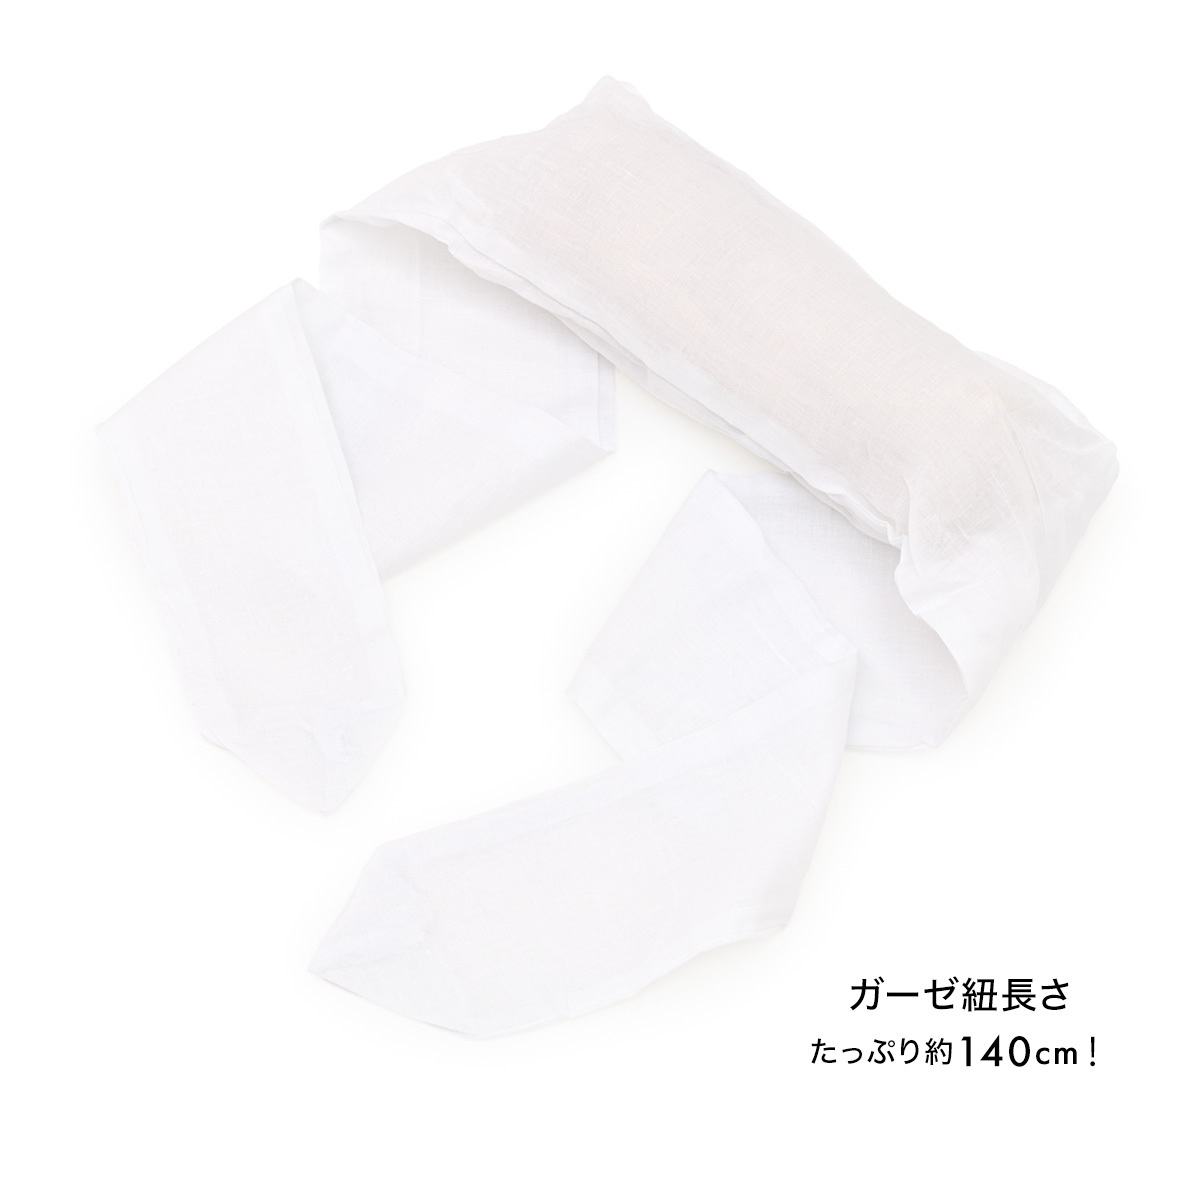  obi подушка ... летний натуральный материалы ... obi ... марля наматывать белый белый губчатая тыква нить . легкий удобные аксессуары гардеробные аксессуары аксессуары для кимоно 